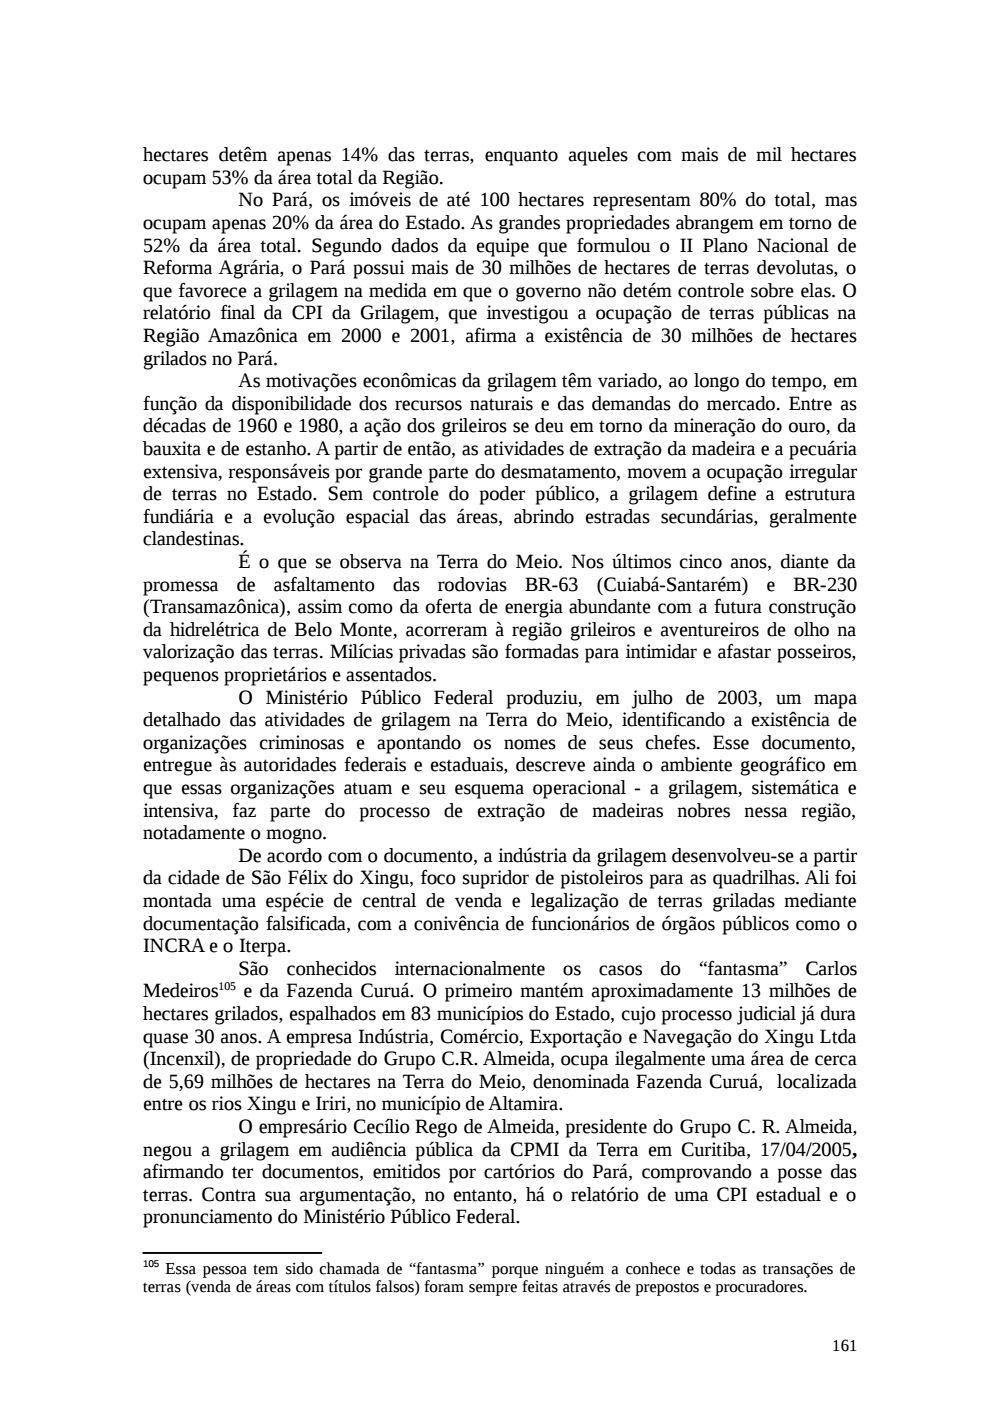 Page 161 from Relatório final da comissão